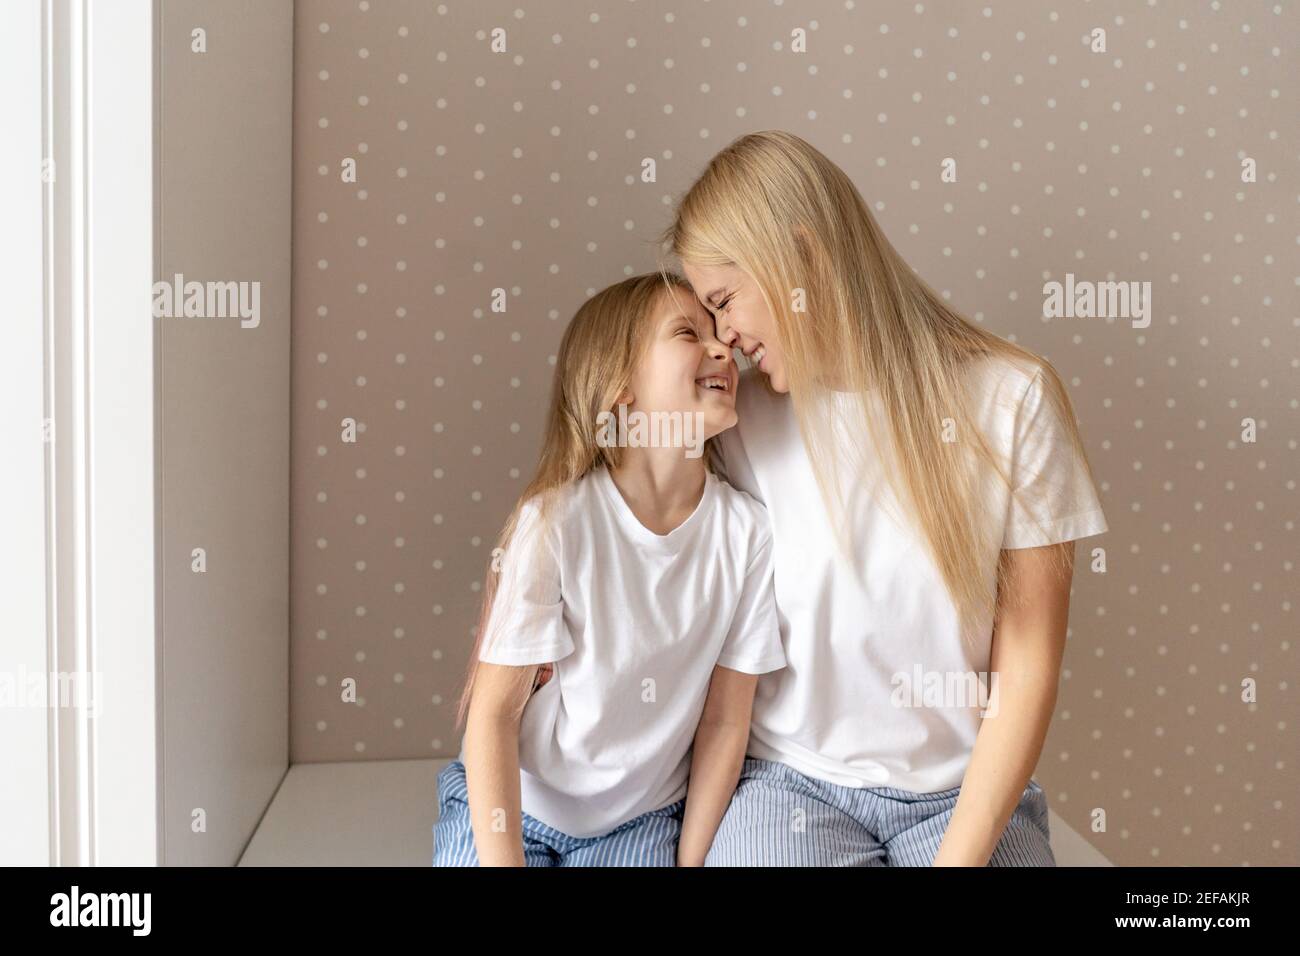 Frau mit kleinen Mädchen zu Hause. Nahaufnahme Porträt, weiße T-Shorts. Mutter und Tochter haben einen Spaß, verwöhnen und lachen. Stockfoto